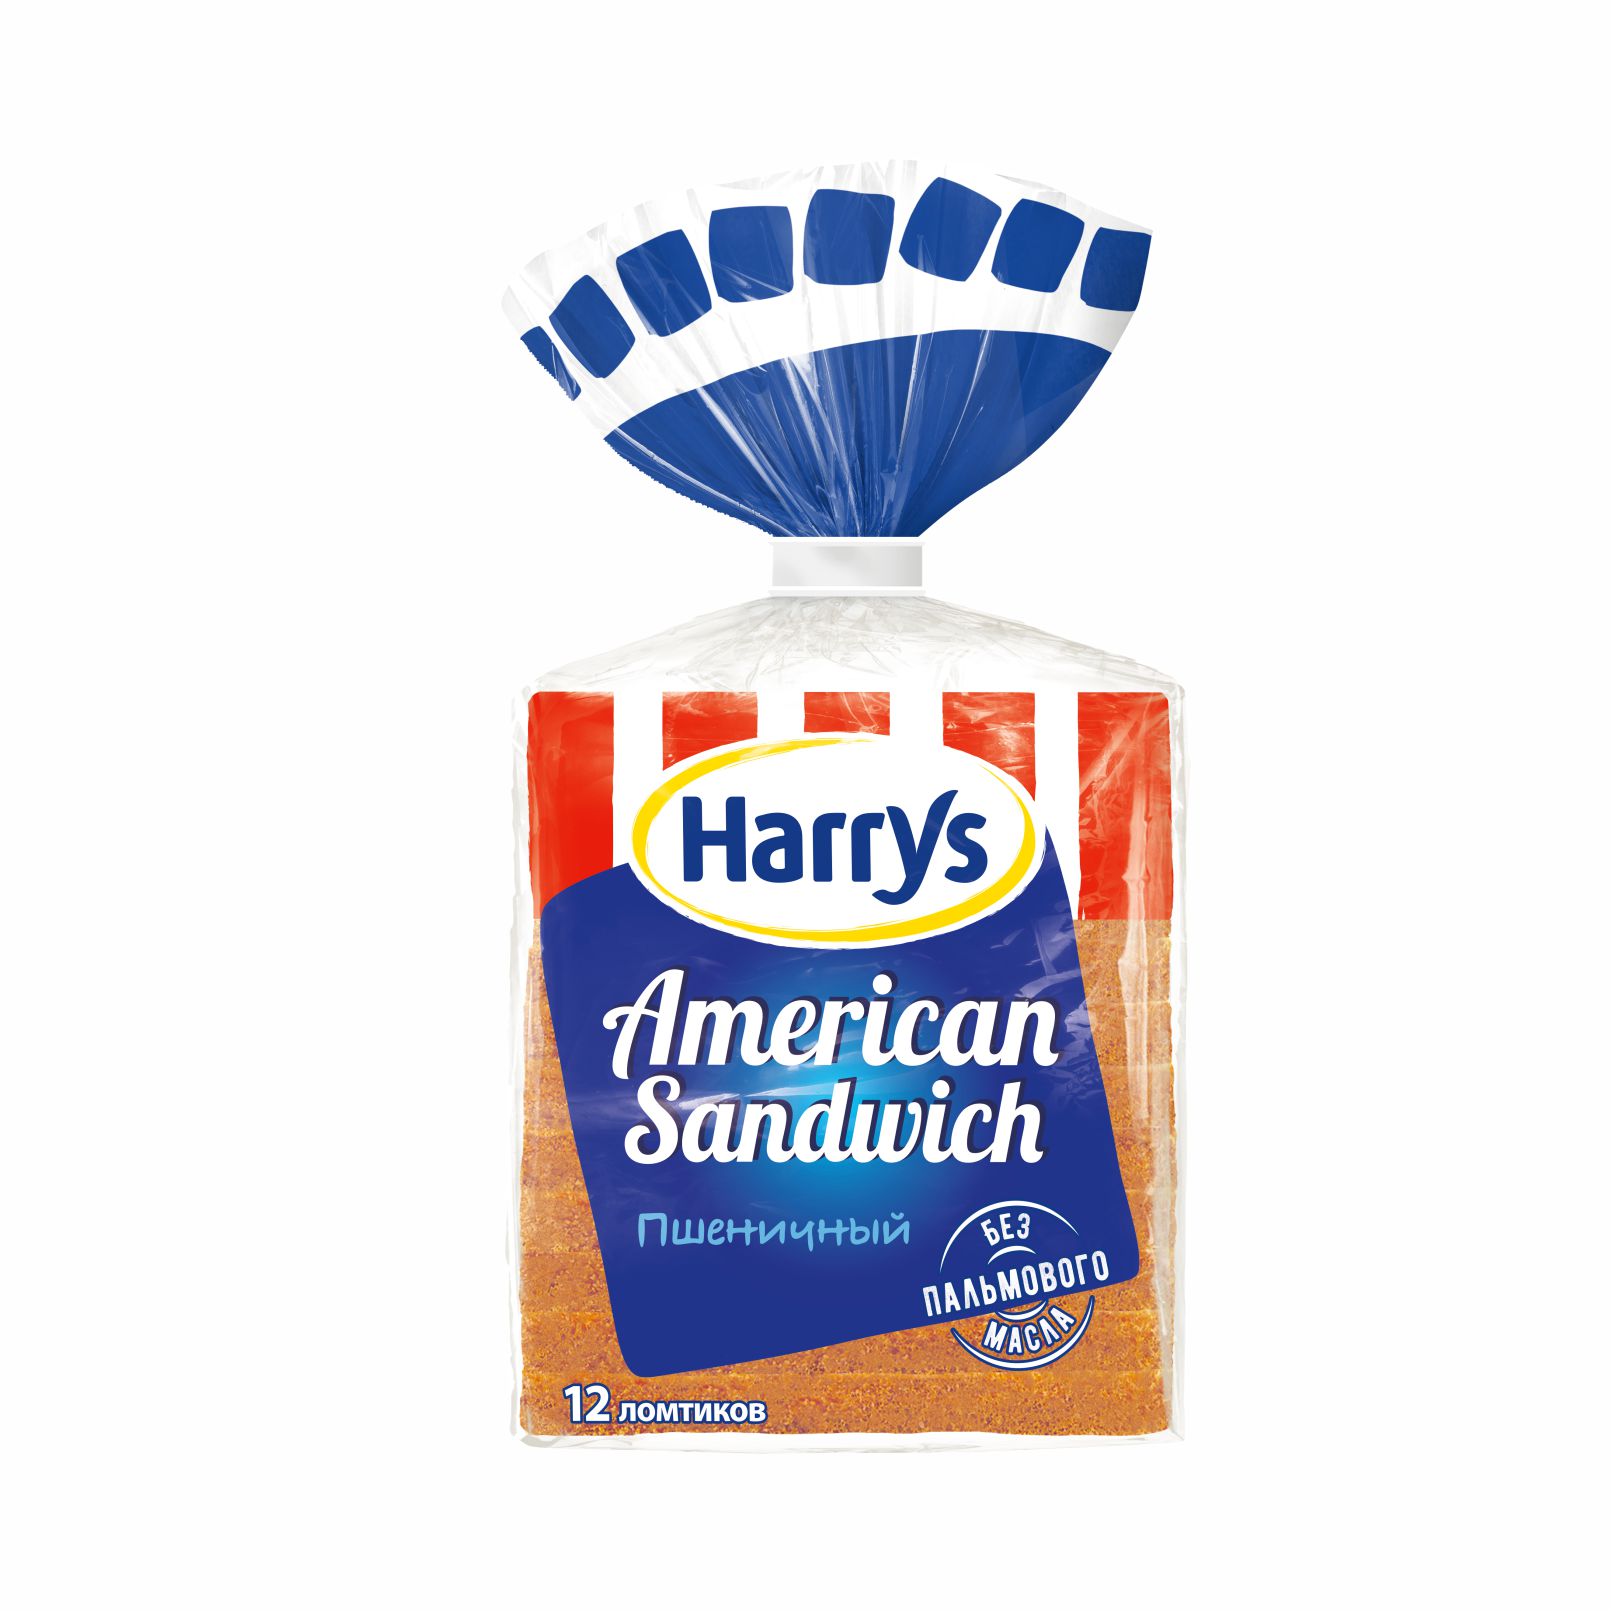 Хлеб Harrys American Sandwich 470 г